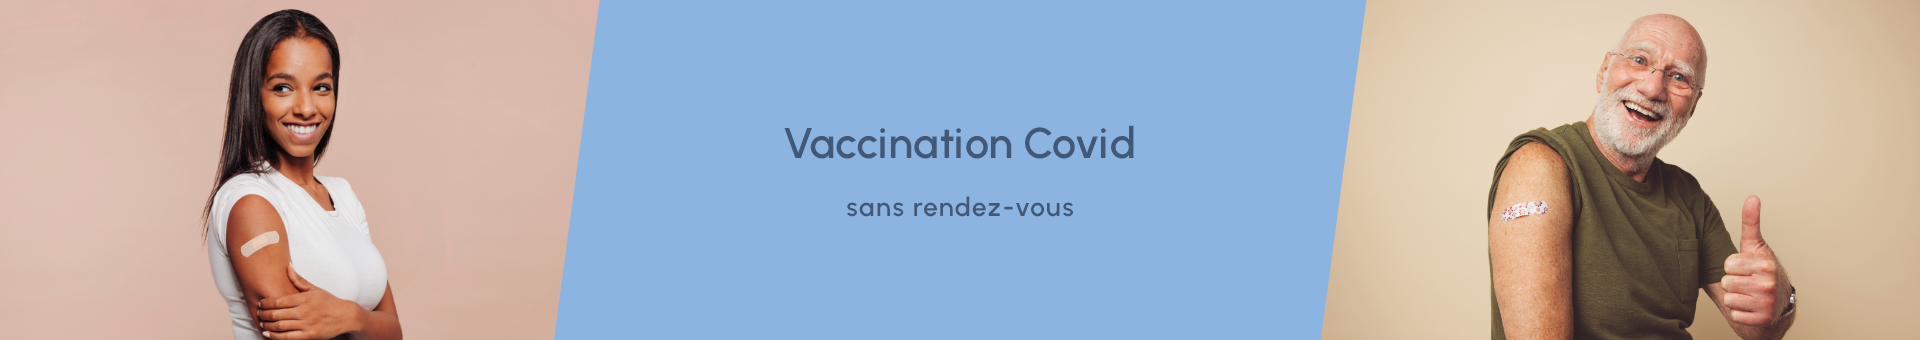 Personnes vaccinées sans RDV contre la covid-19